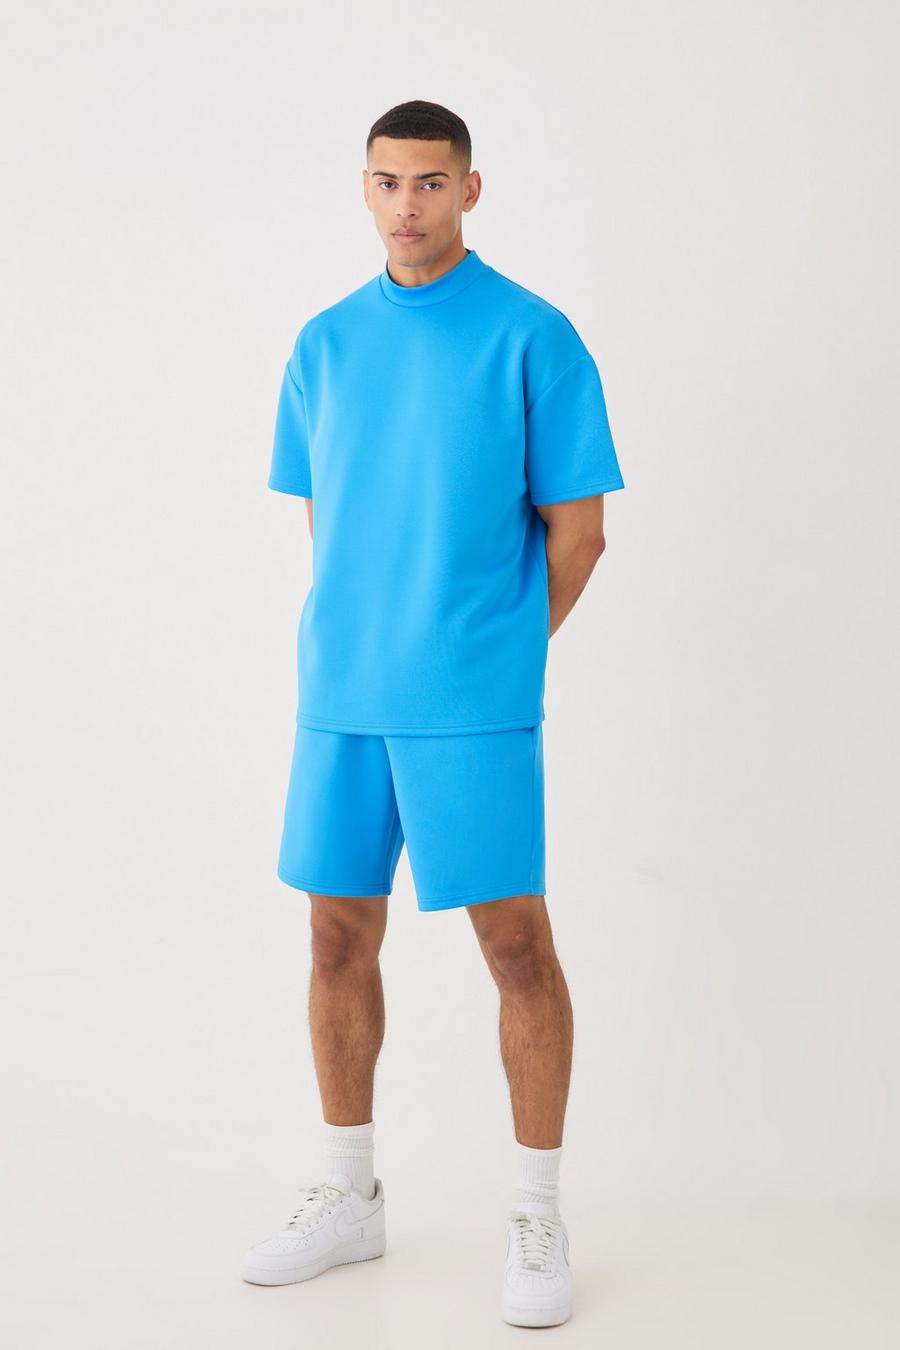 Ensemble oversize avec t-shirt et short, Bright blue image number 1